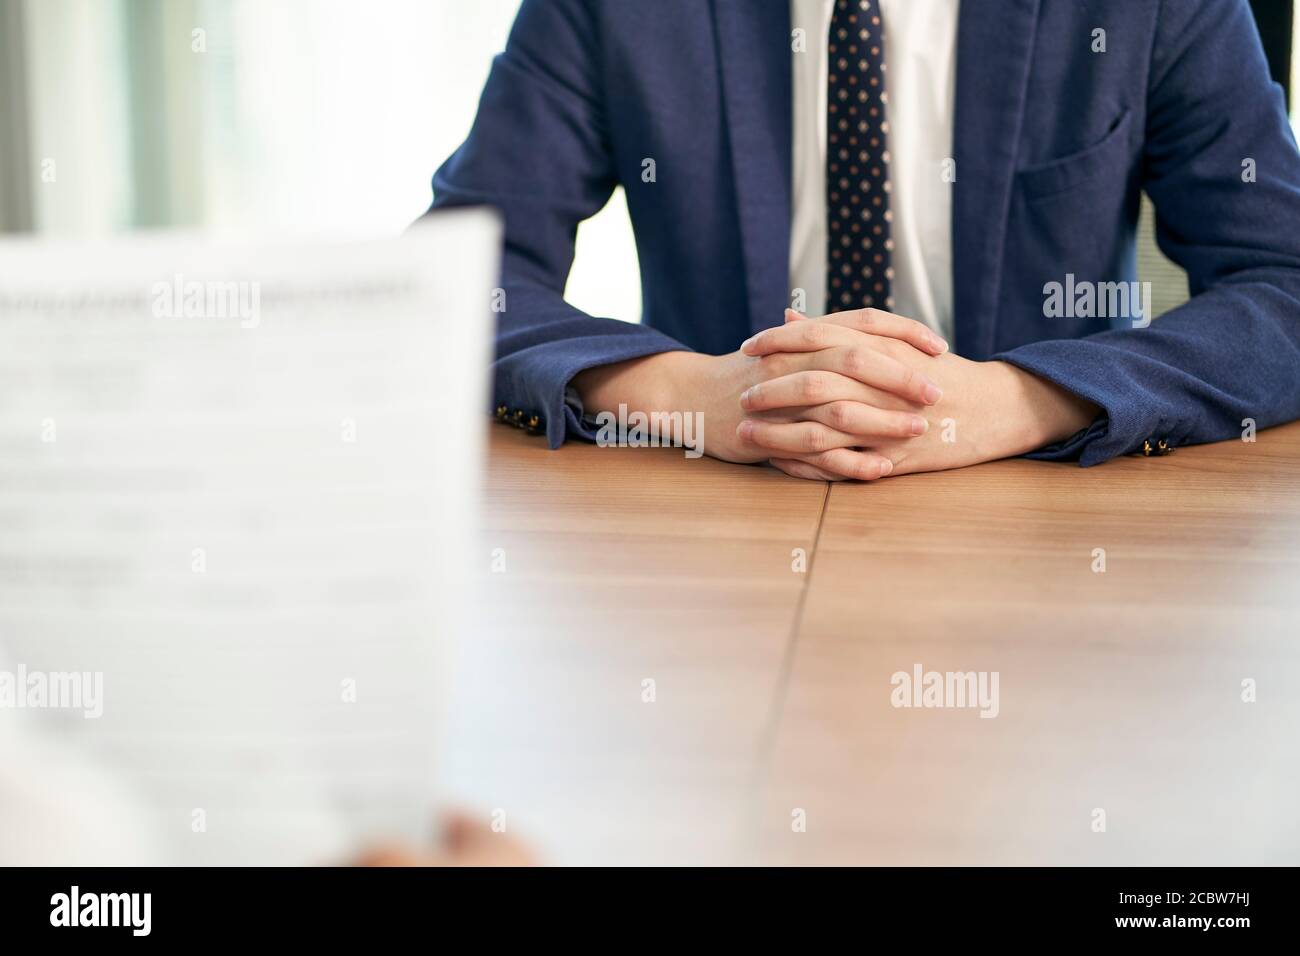 job seeker asiatico intervistato dal responsabile delle risorse umane in carica, concentrarsi sulle mani del candidato Foto Stock